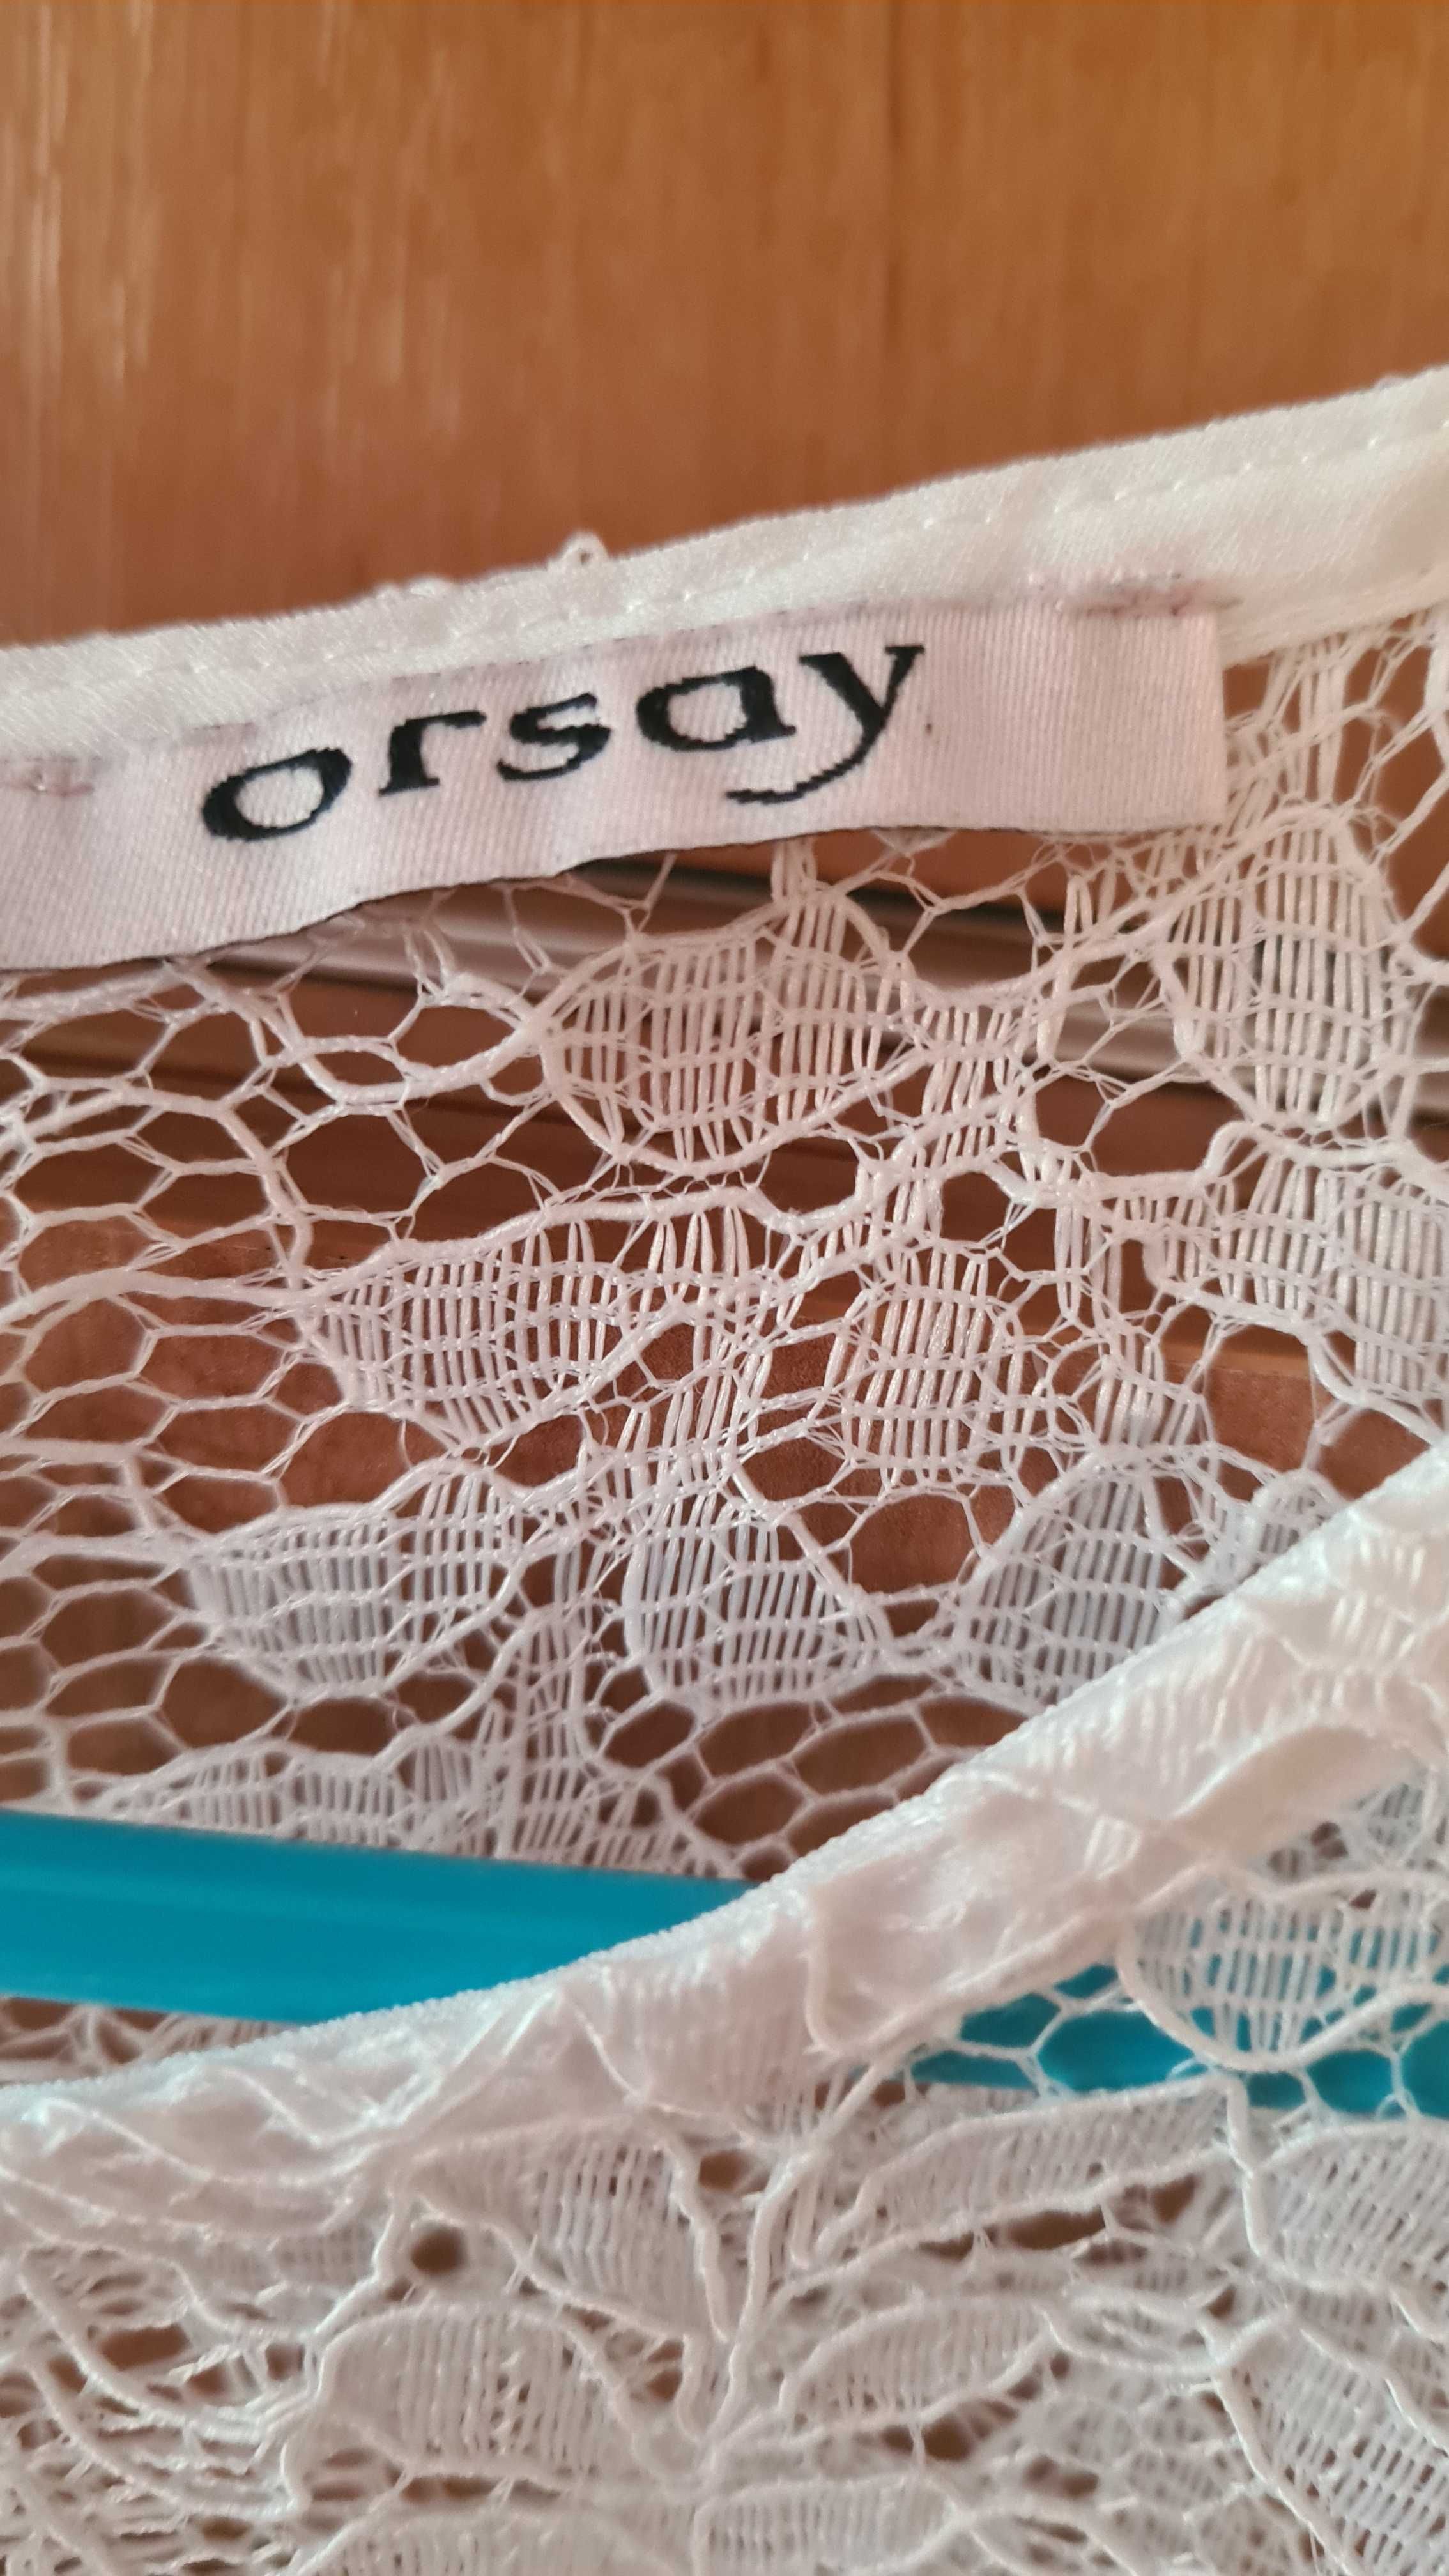 Orsey - NOWA biała z piękną nakładką koronkową, roz. XL, 42